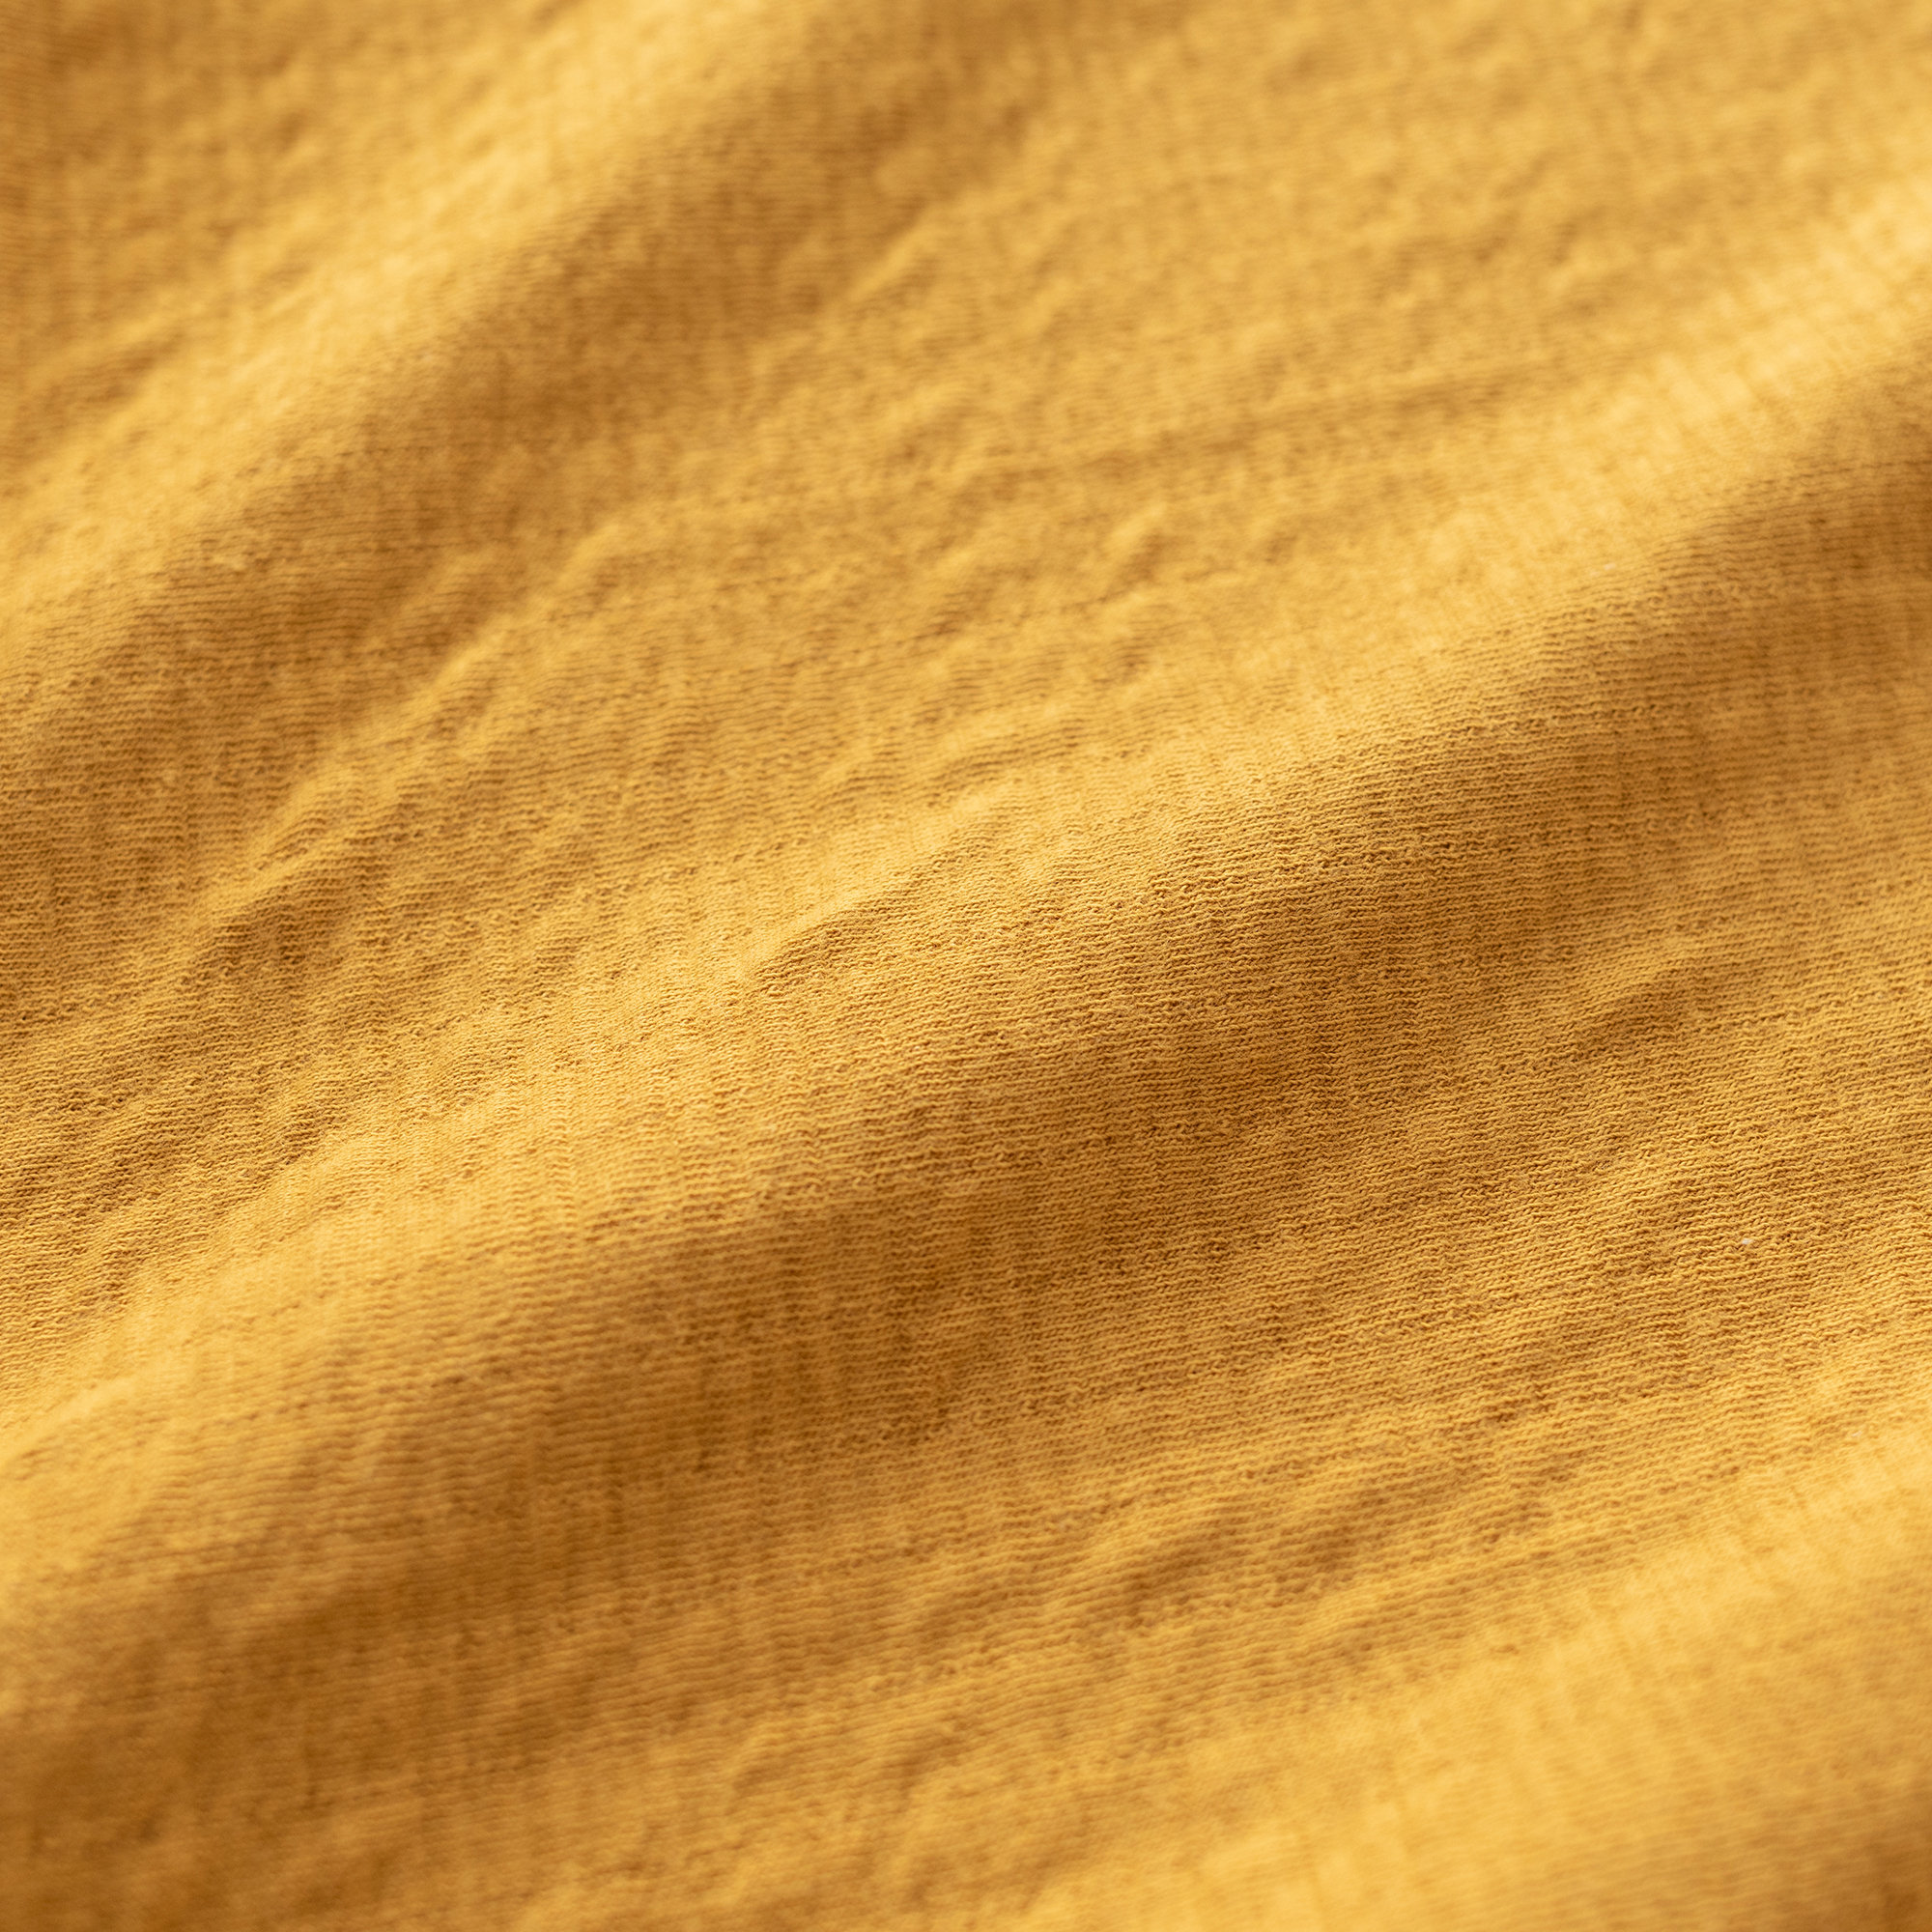 Bib waterproof Tetra Jersey 37cm CADUM Golden